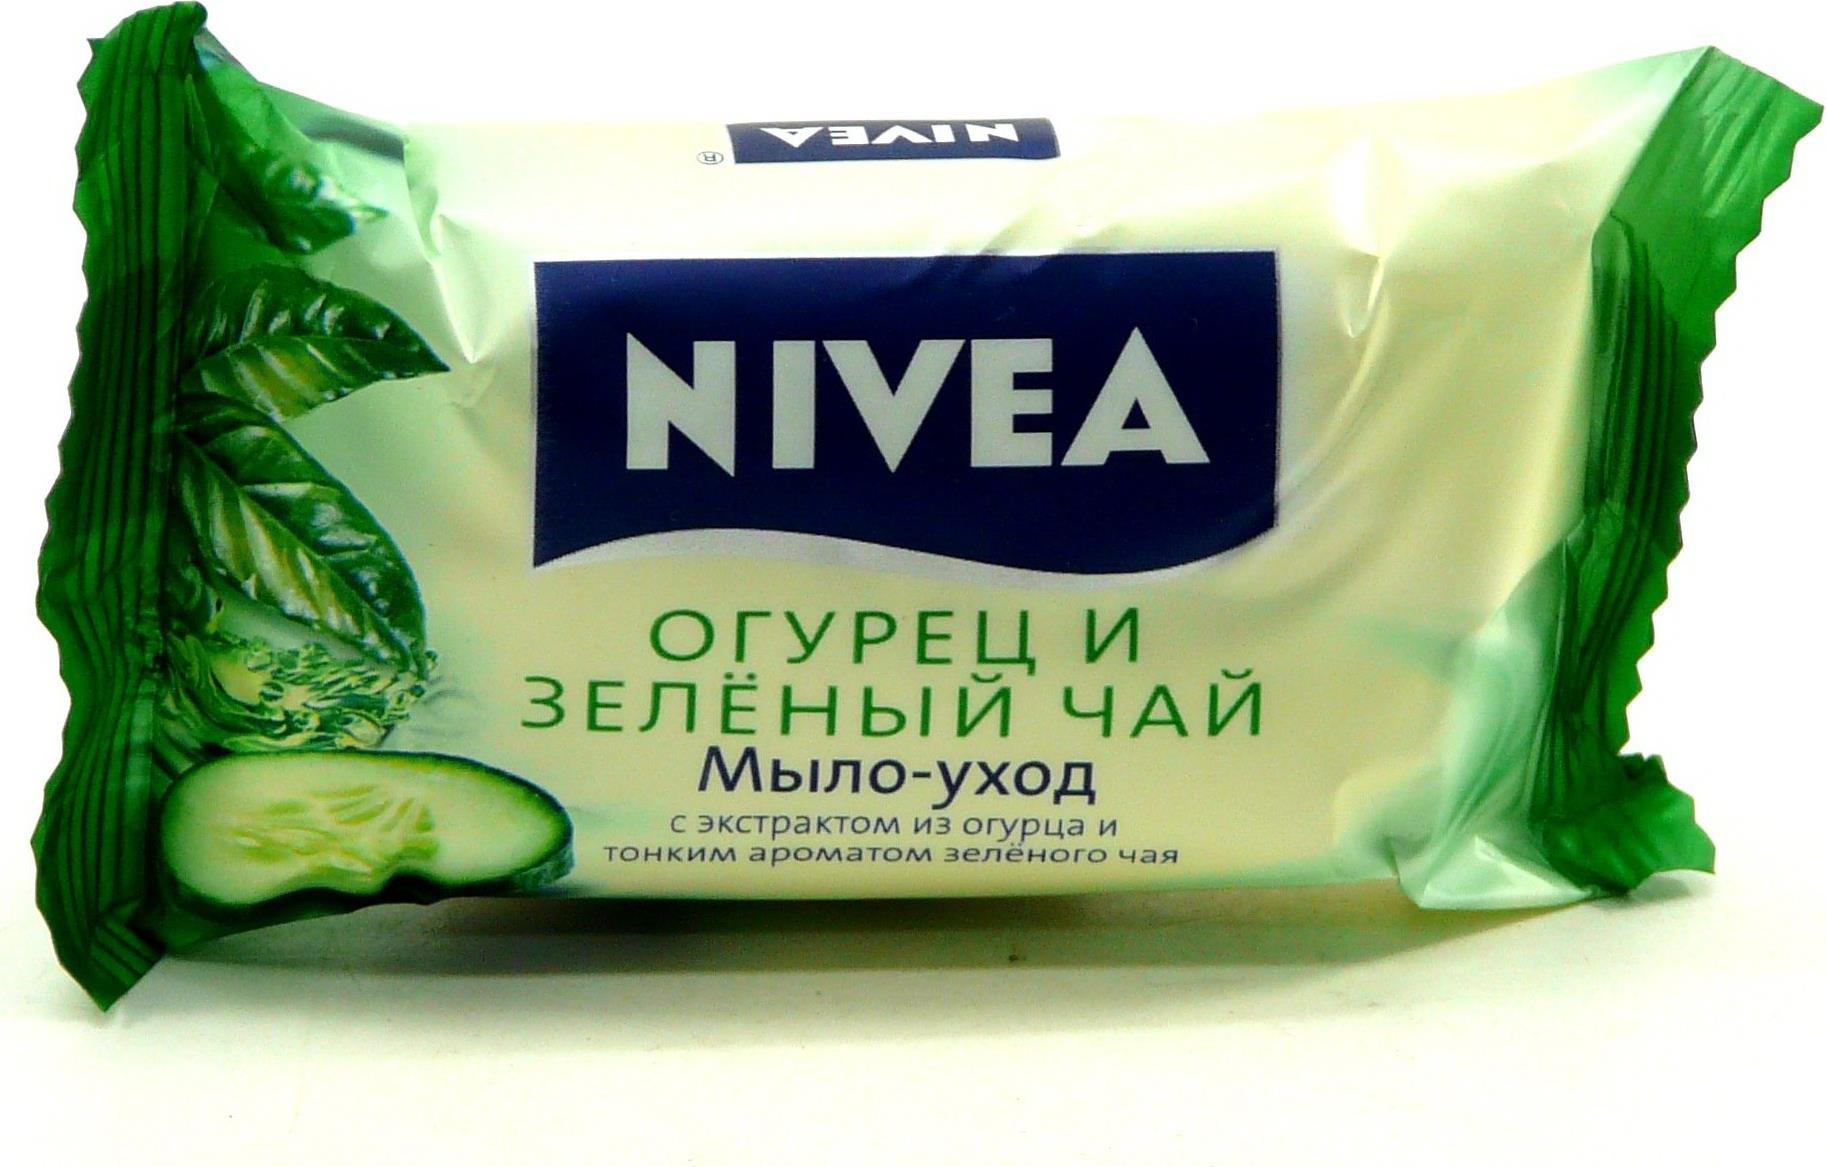 Мыло-уход Nivea Огурец и Зеленый чай